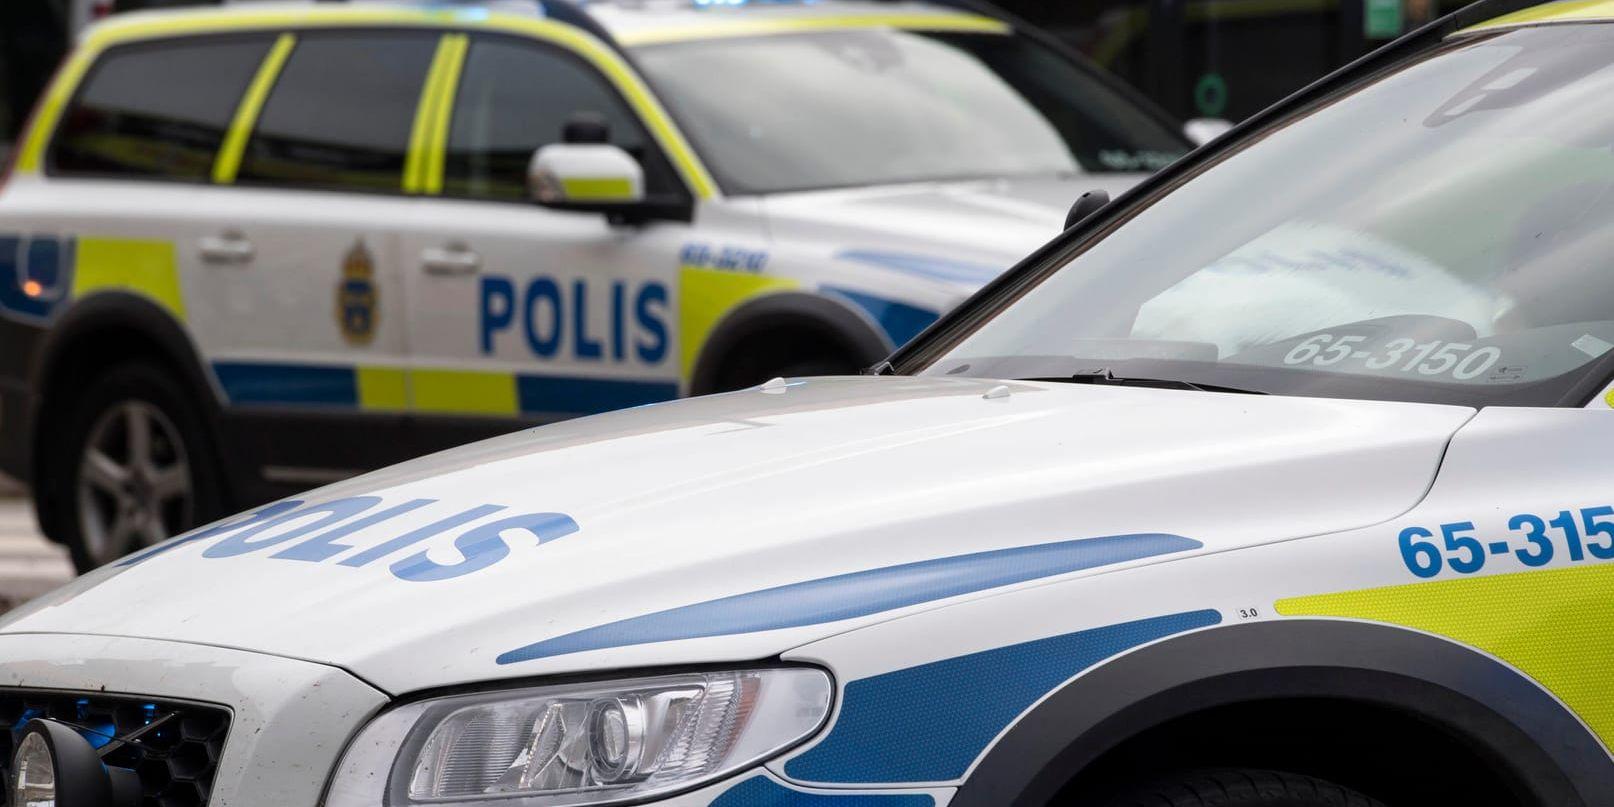 Två personer i en bil blev beskjutna i närheten av Flatenbadet i sydöstra Stockholm. Arkivbild.